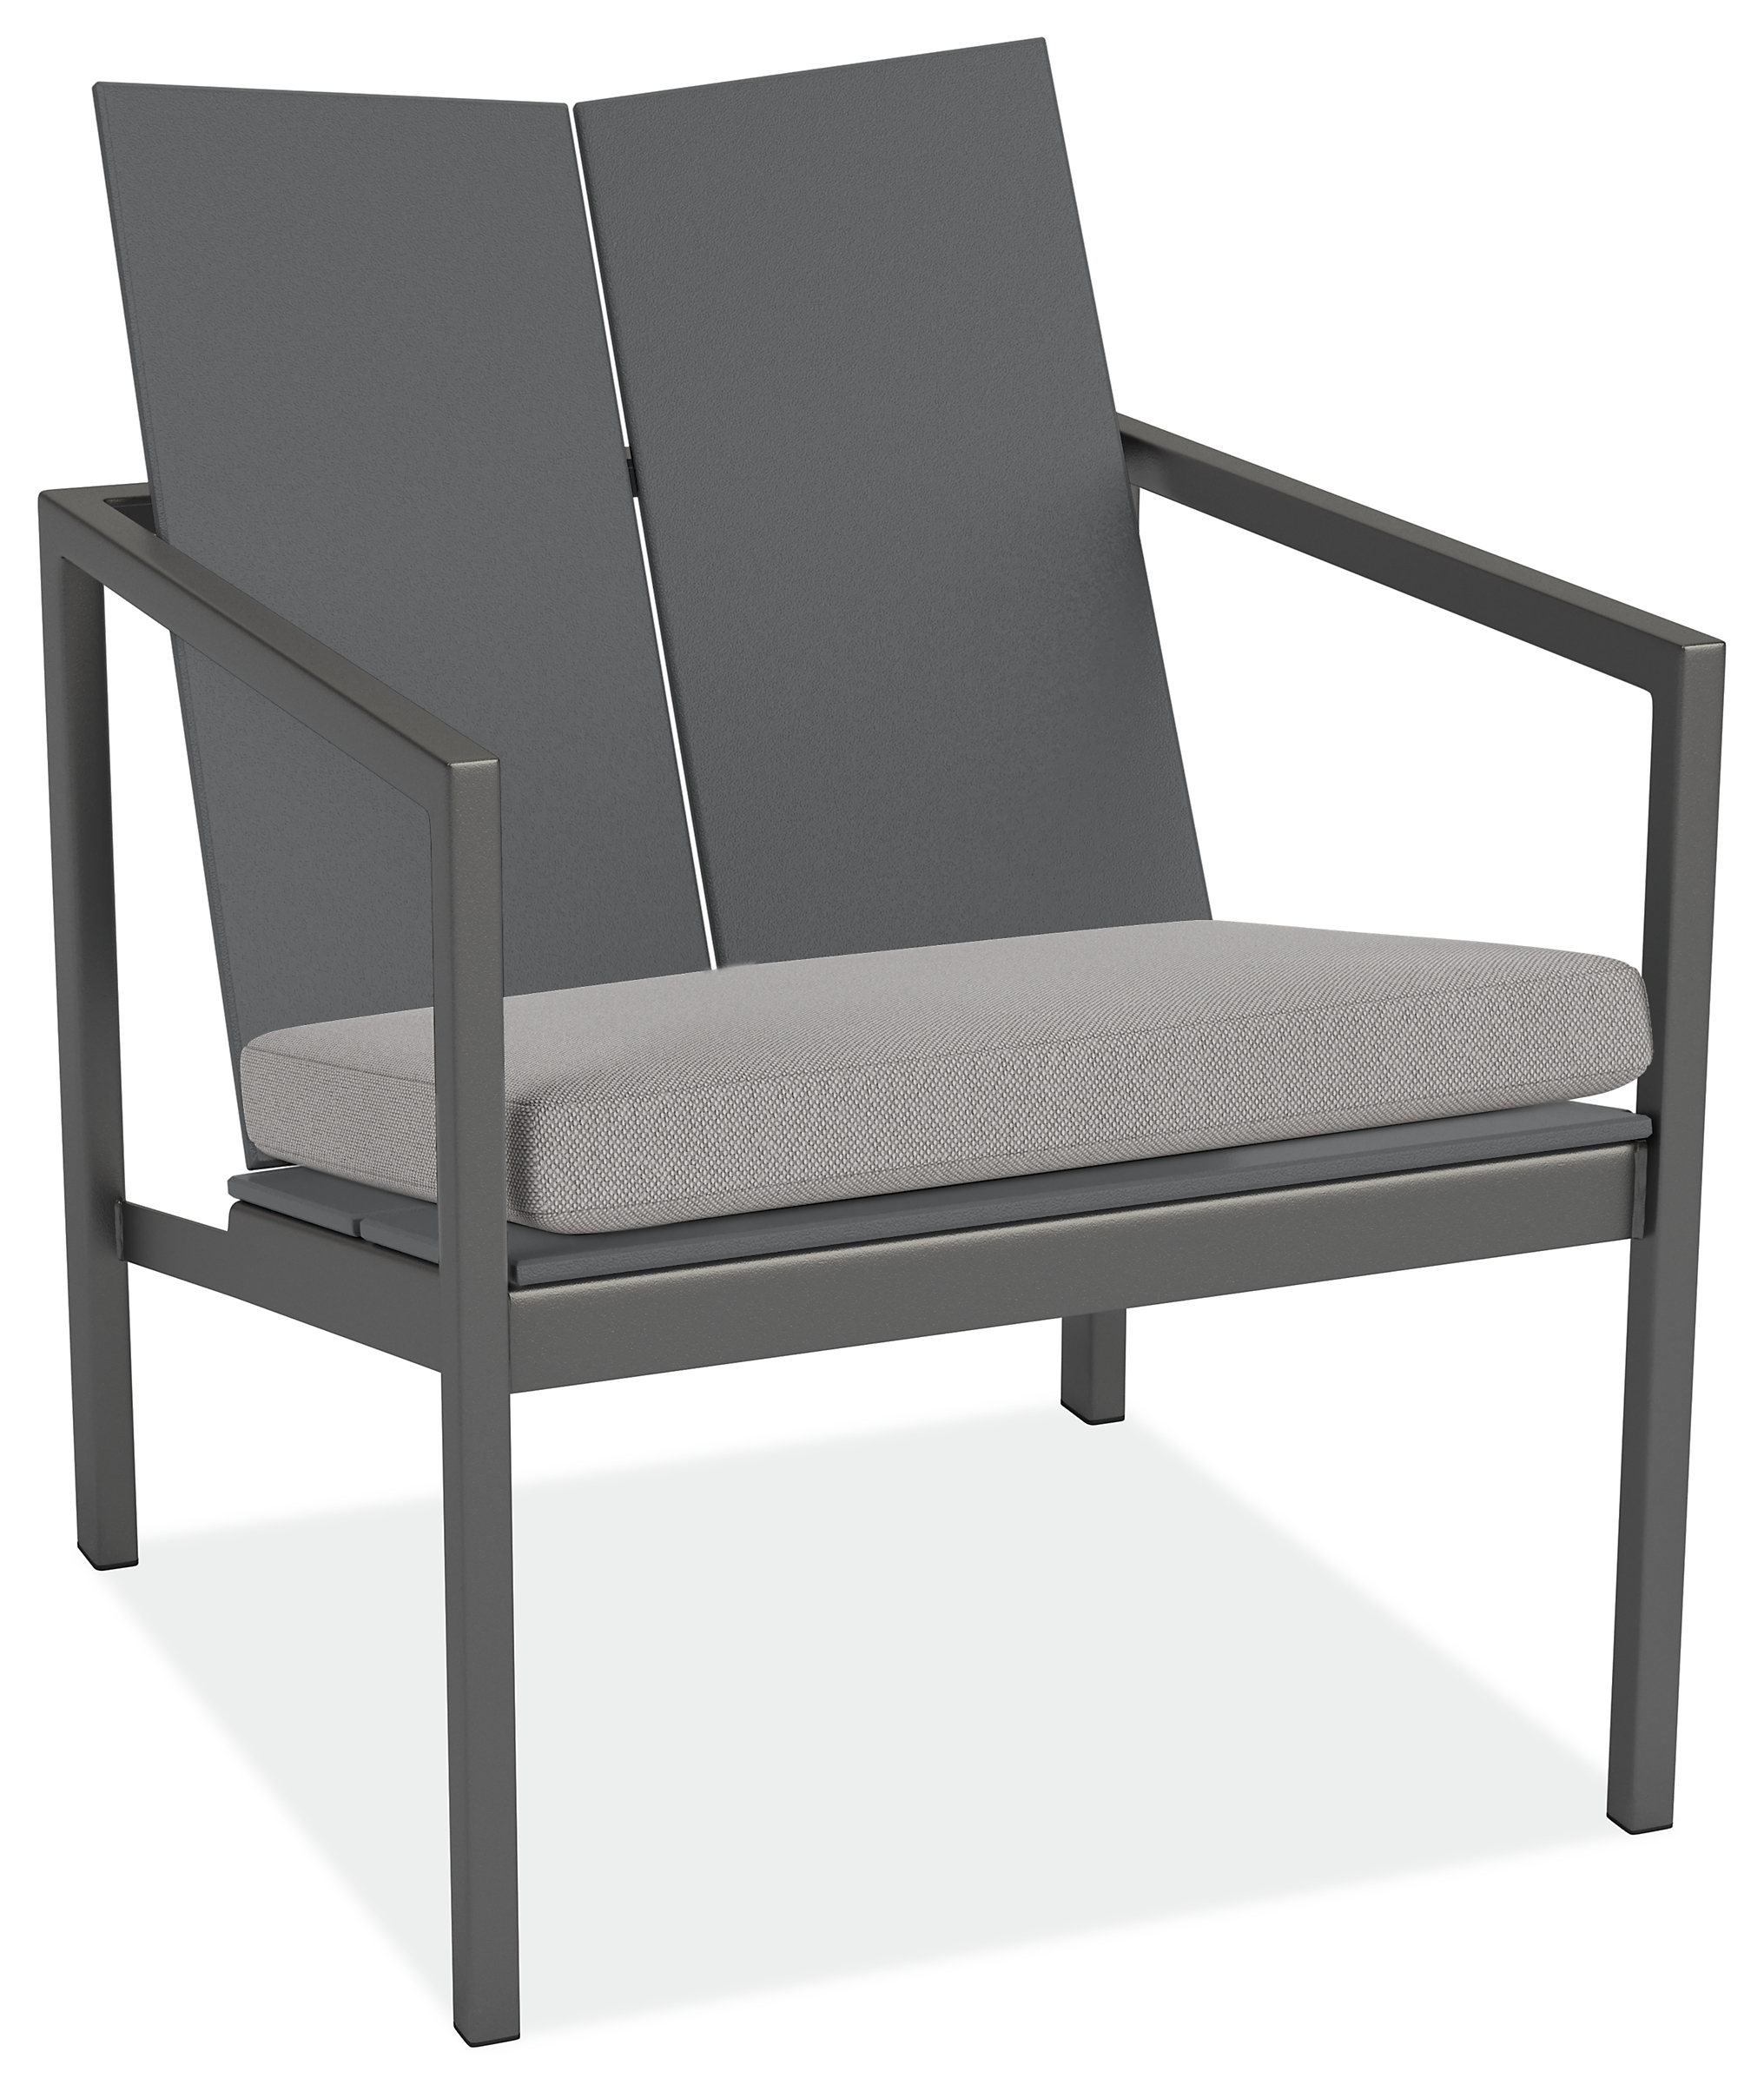 Mattix Cushion for Lounge Chair